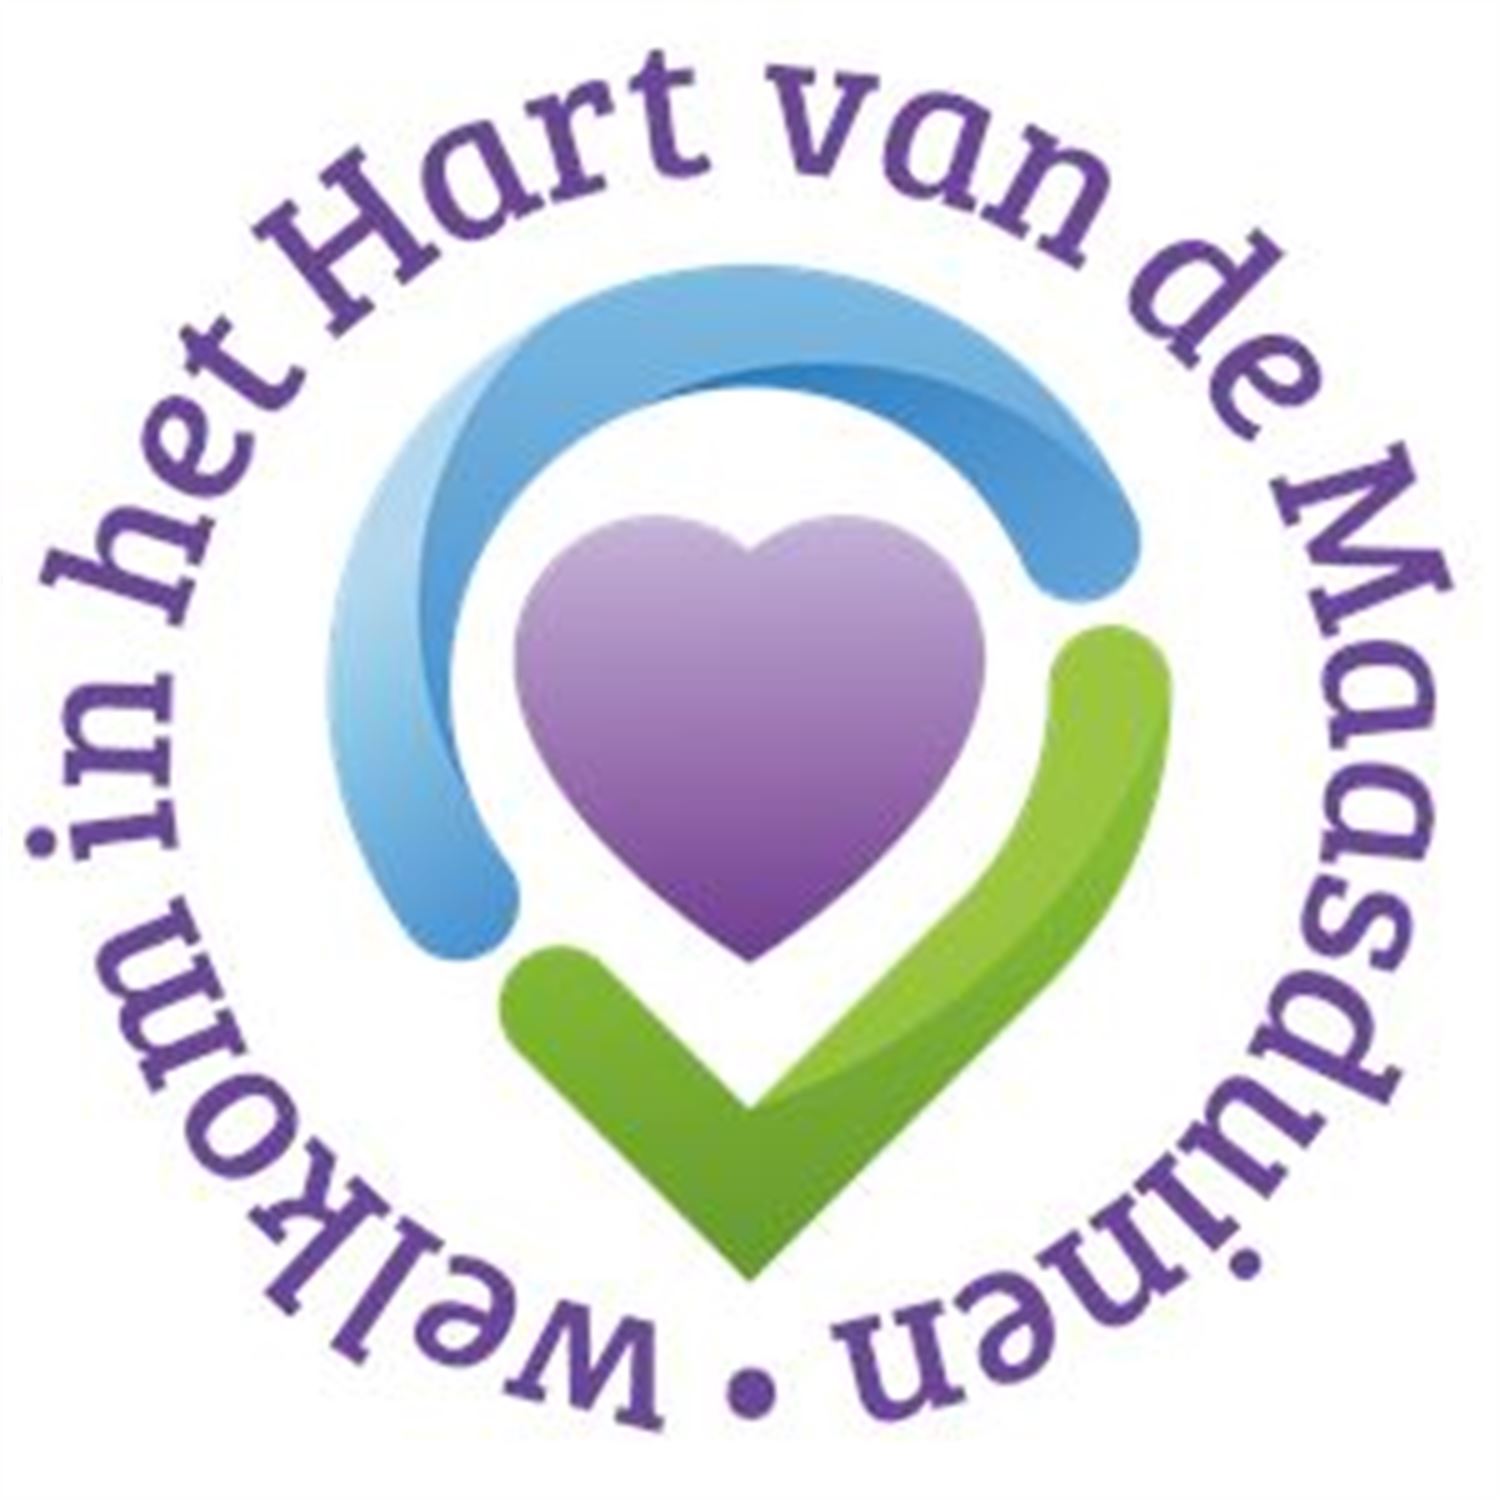 On Demand Feed for MaasduinenCentraal Radio